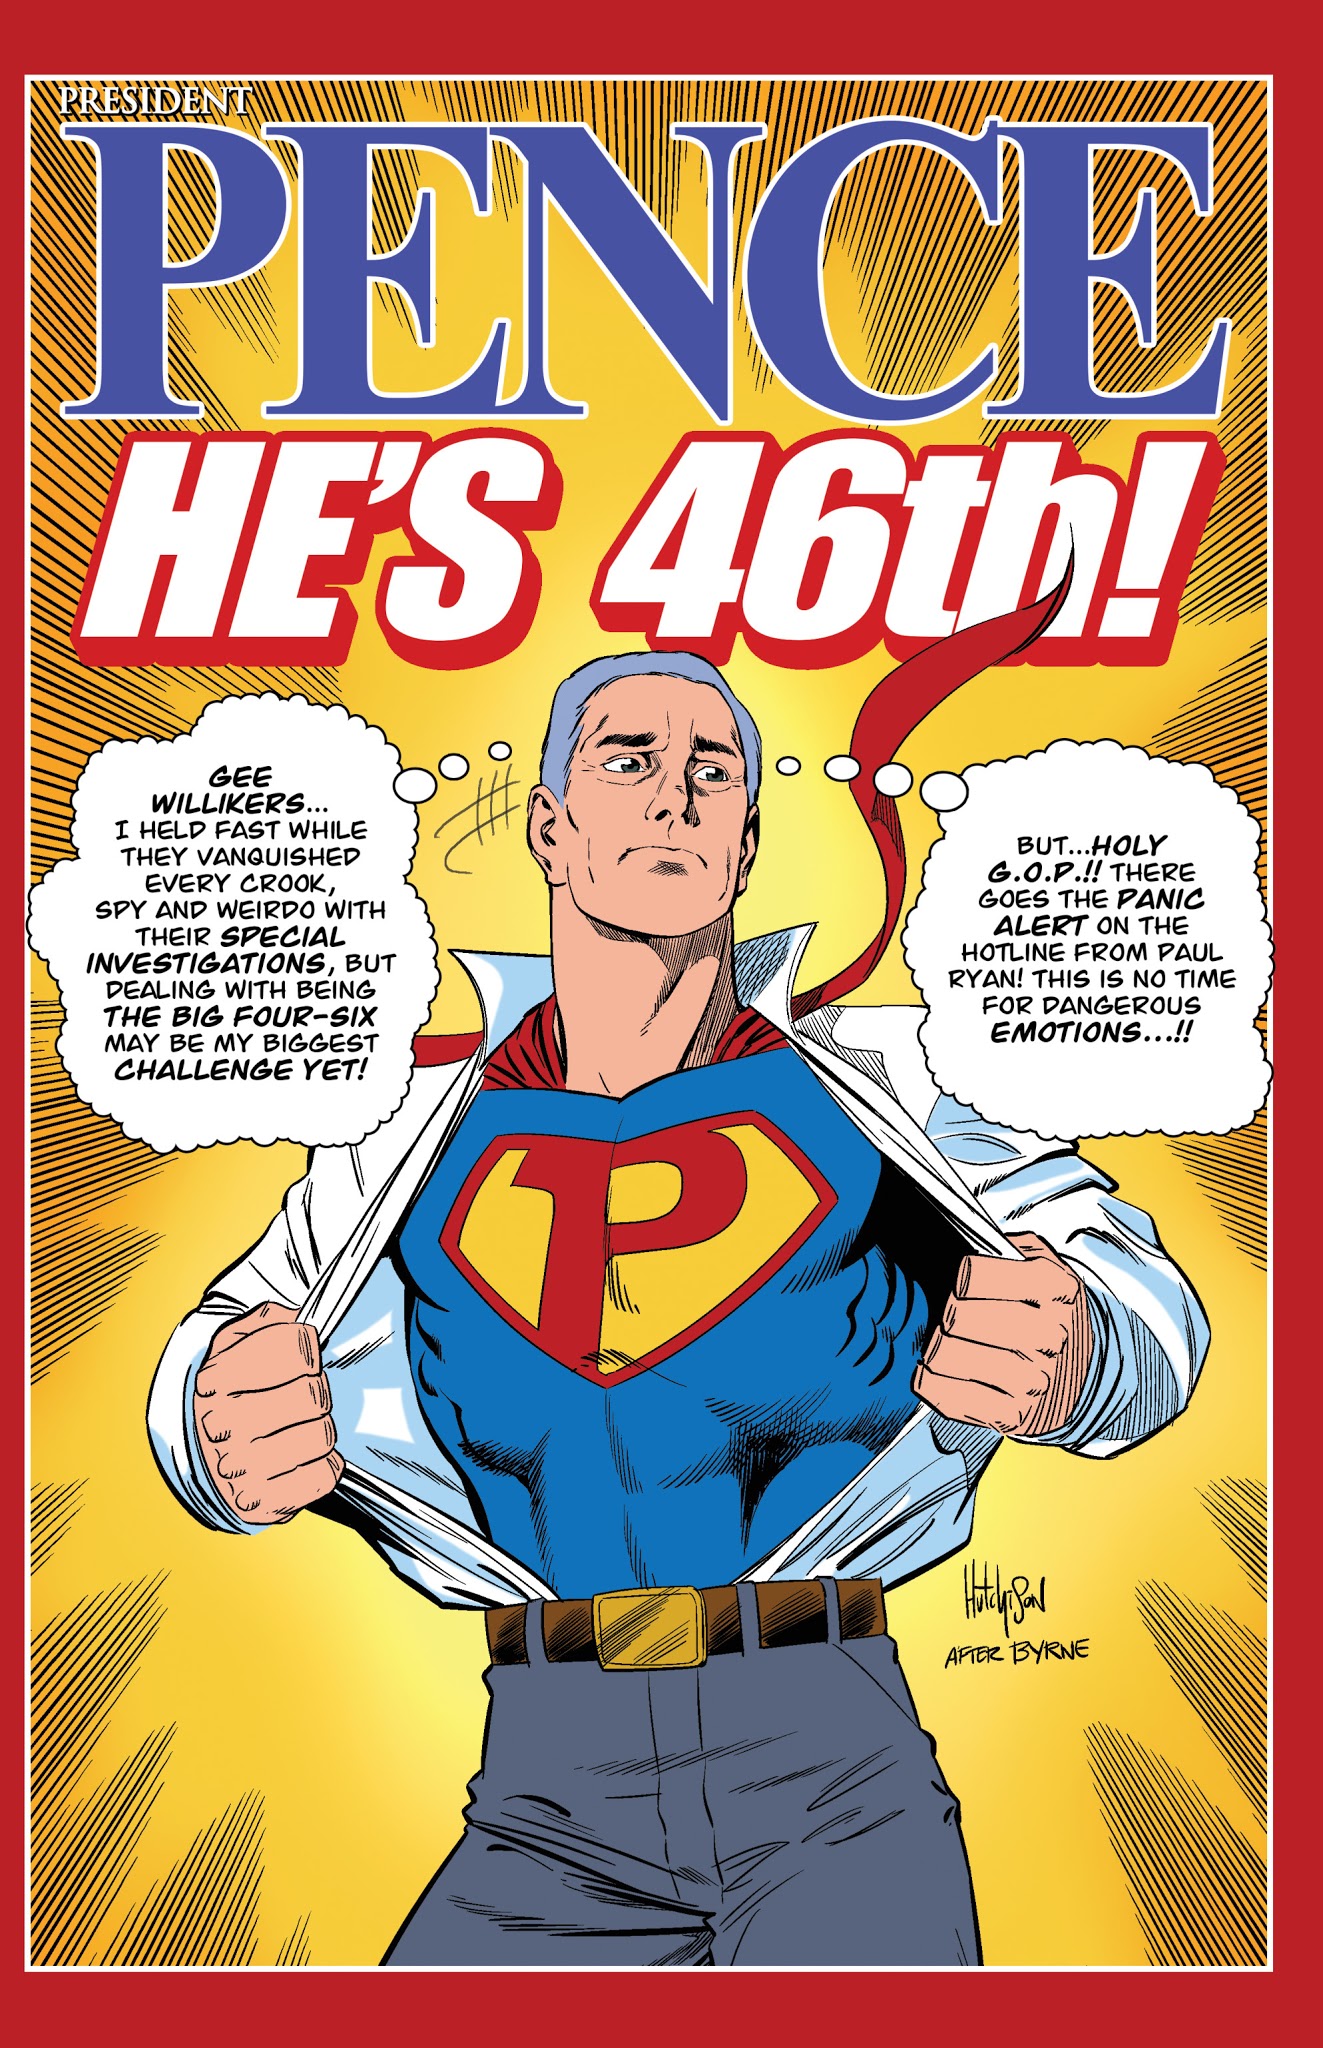 Read online President Pence comic -  Issue # Full - 24